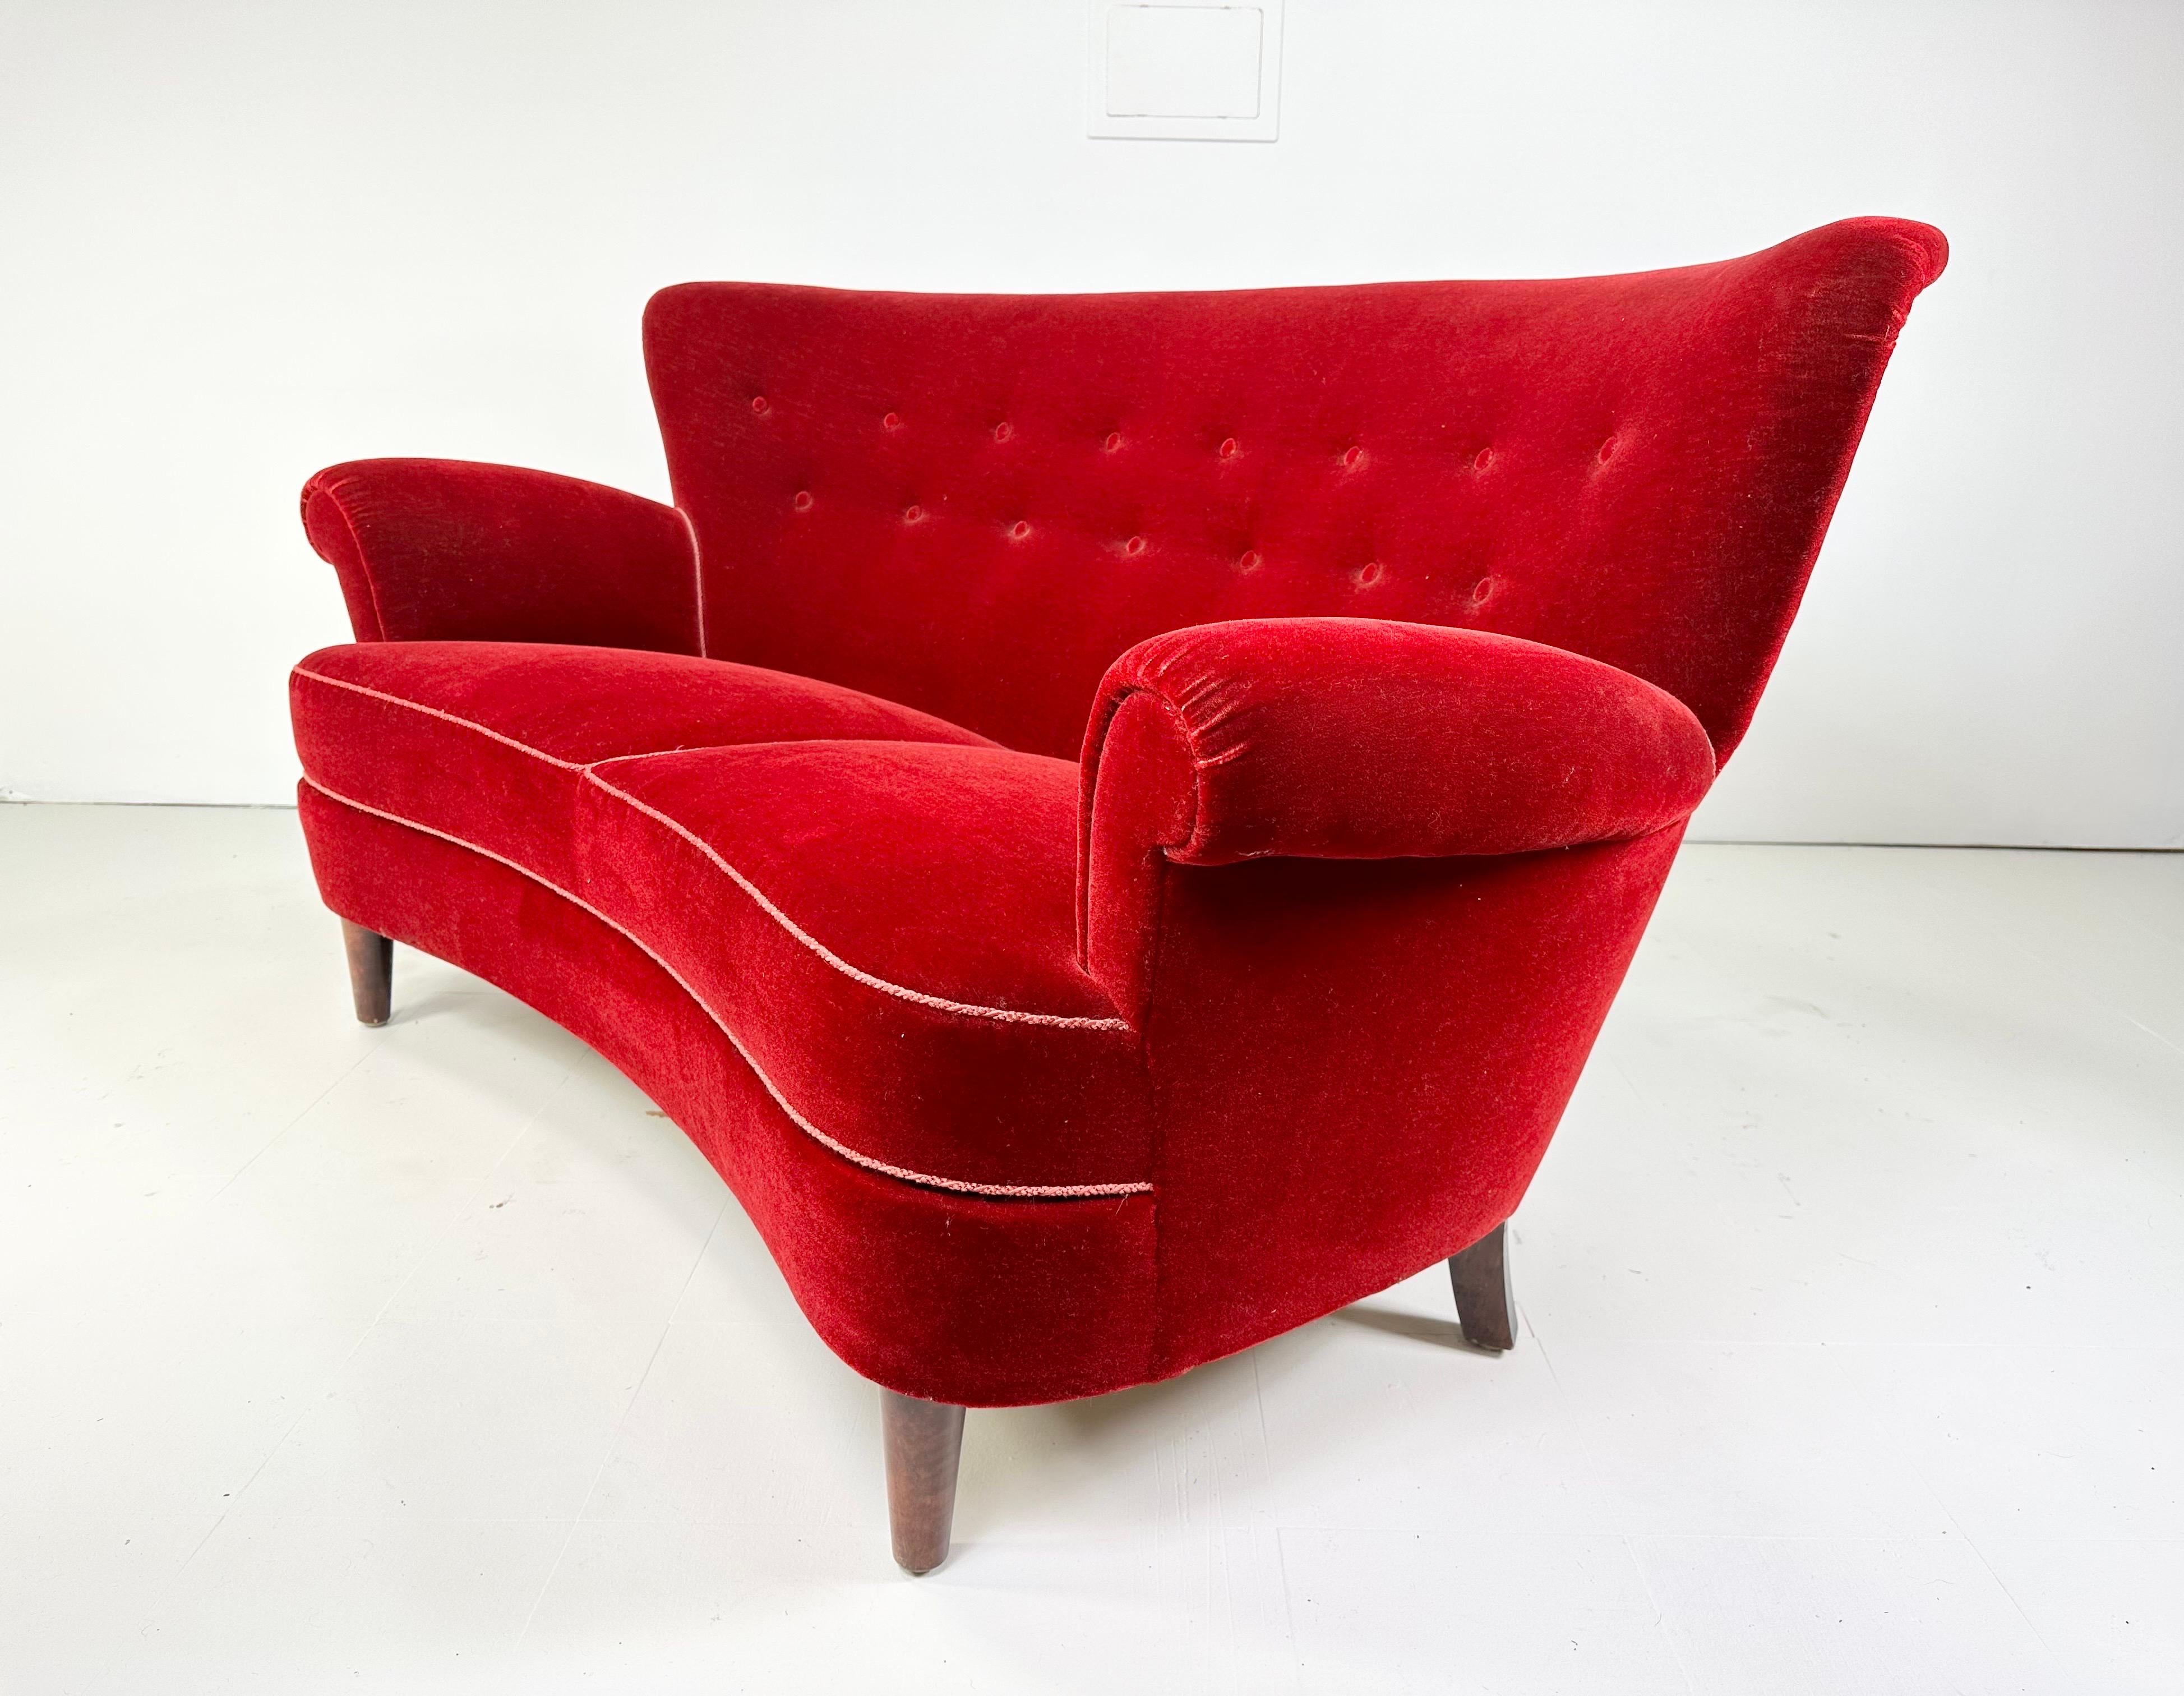 Dänisches geschwungenes Sofa aus den 1940er Jahren. Polsterung aus rotem Samt. Beine aus Buchenholz.

Lieferung in den Großraum NYC für 425 $ möglich. Bitte erkundigen Sie sich vor dem Kauf.